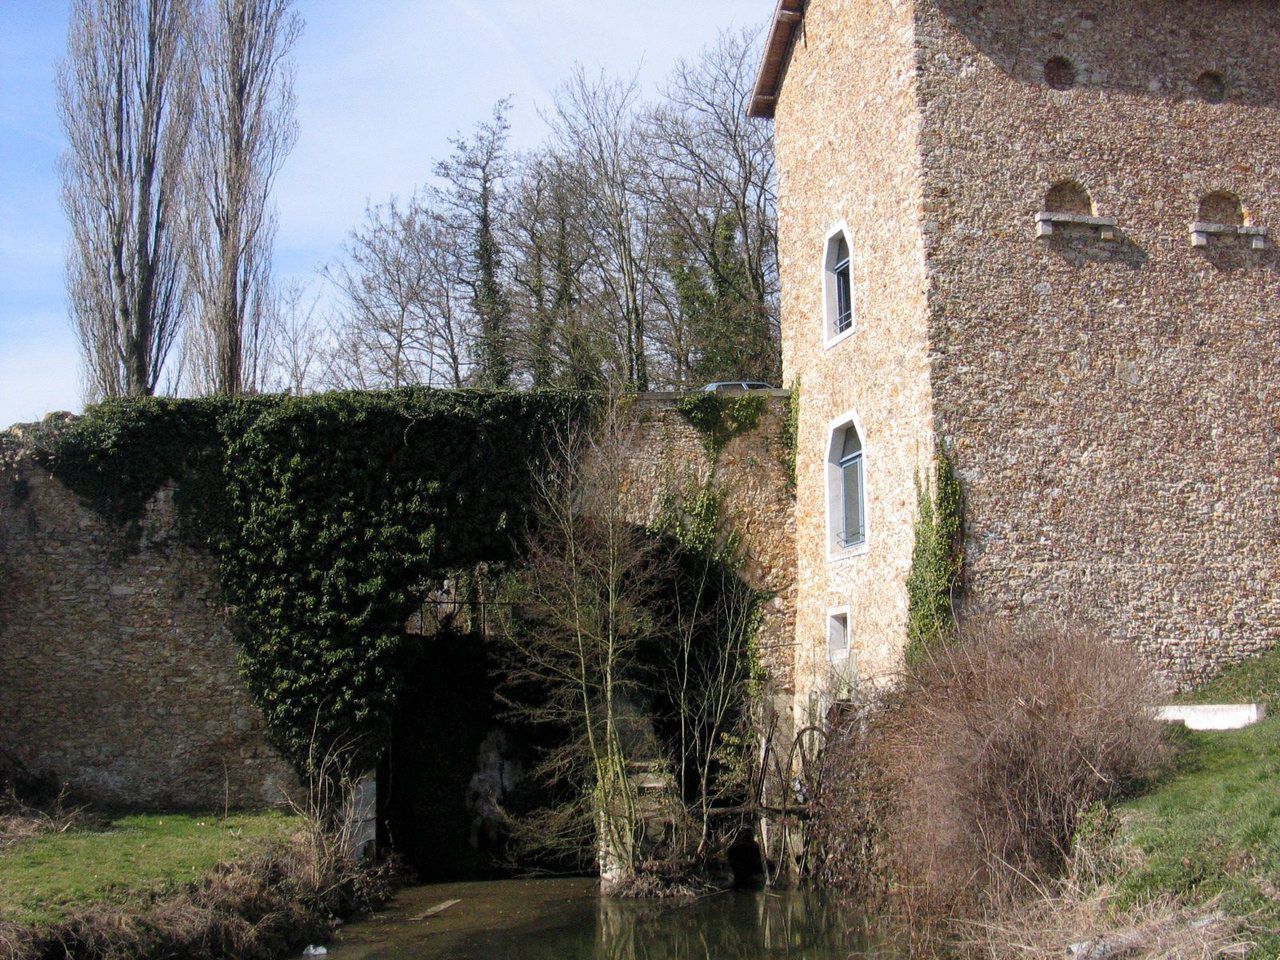 <b></b> Chateaufort. Le moulin bénéficie d’une « position pittoresque » à flanc de colline et contre le pont.